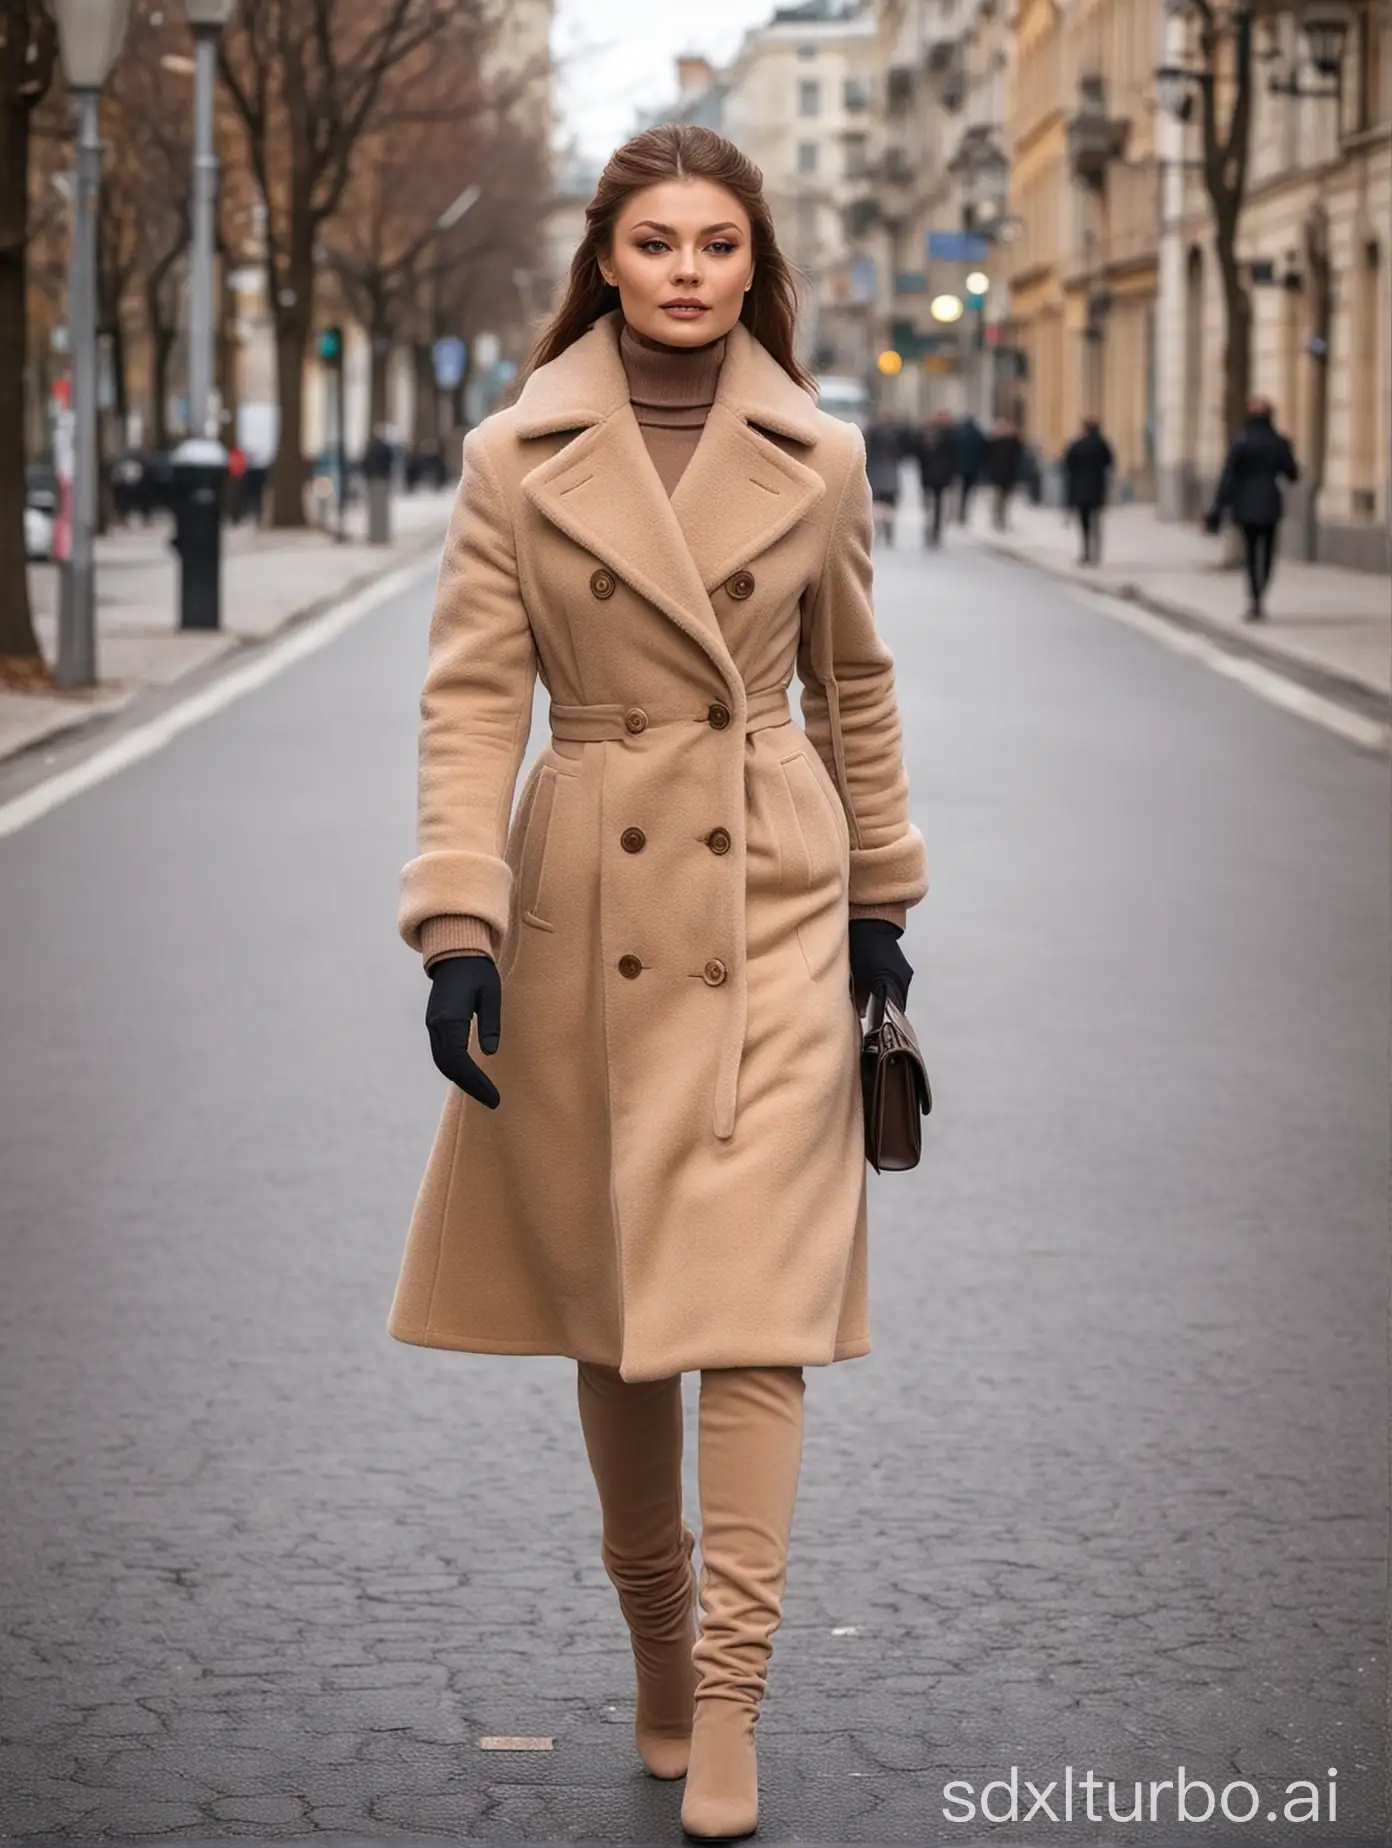 Elegant-Winter-Outfit-Fashion-Alina-Kabaeva-Strolls-Gracefully